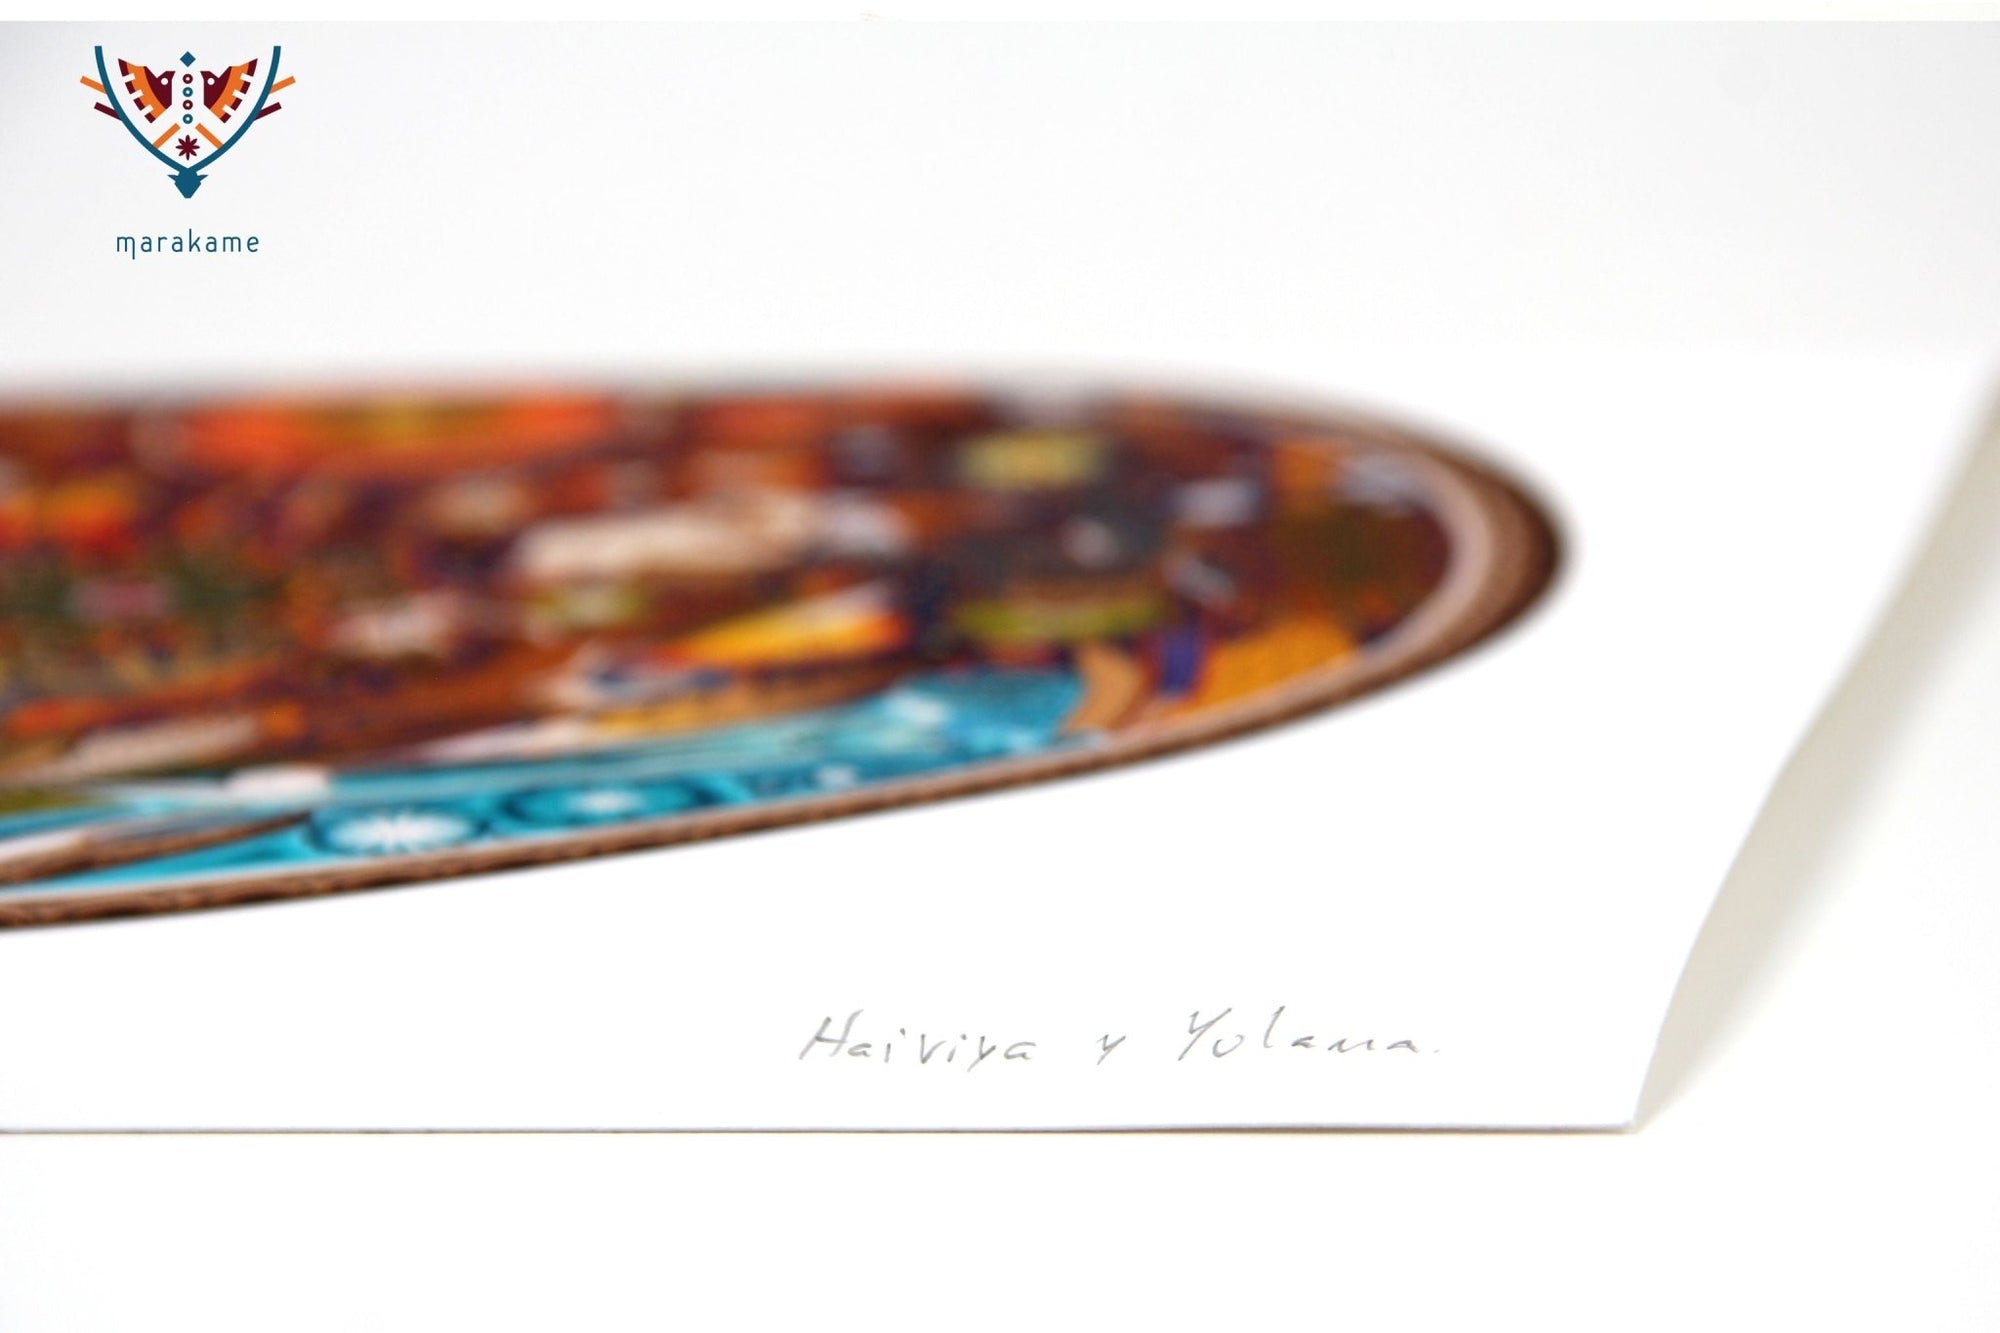 マラアカカメの歌 - 30 x 30 cm。 - 12×12インチ。 - ウイチョル族の芸術 - マラカメ